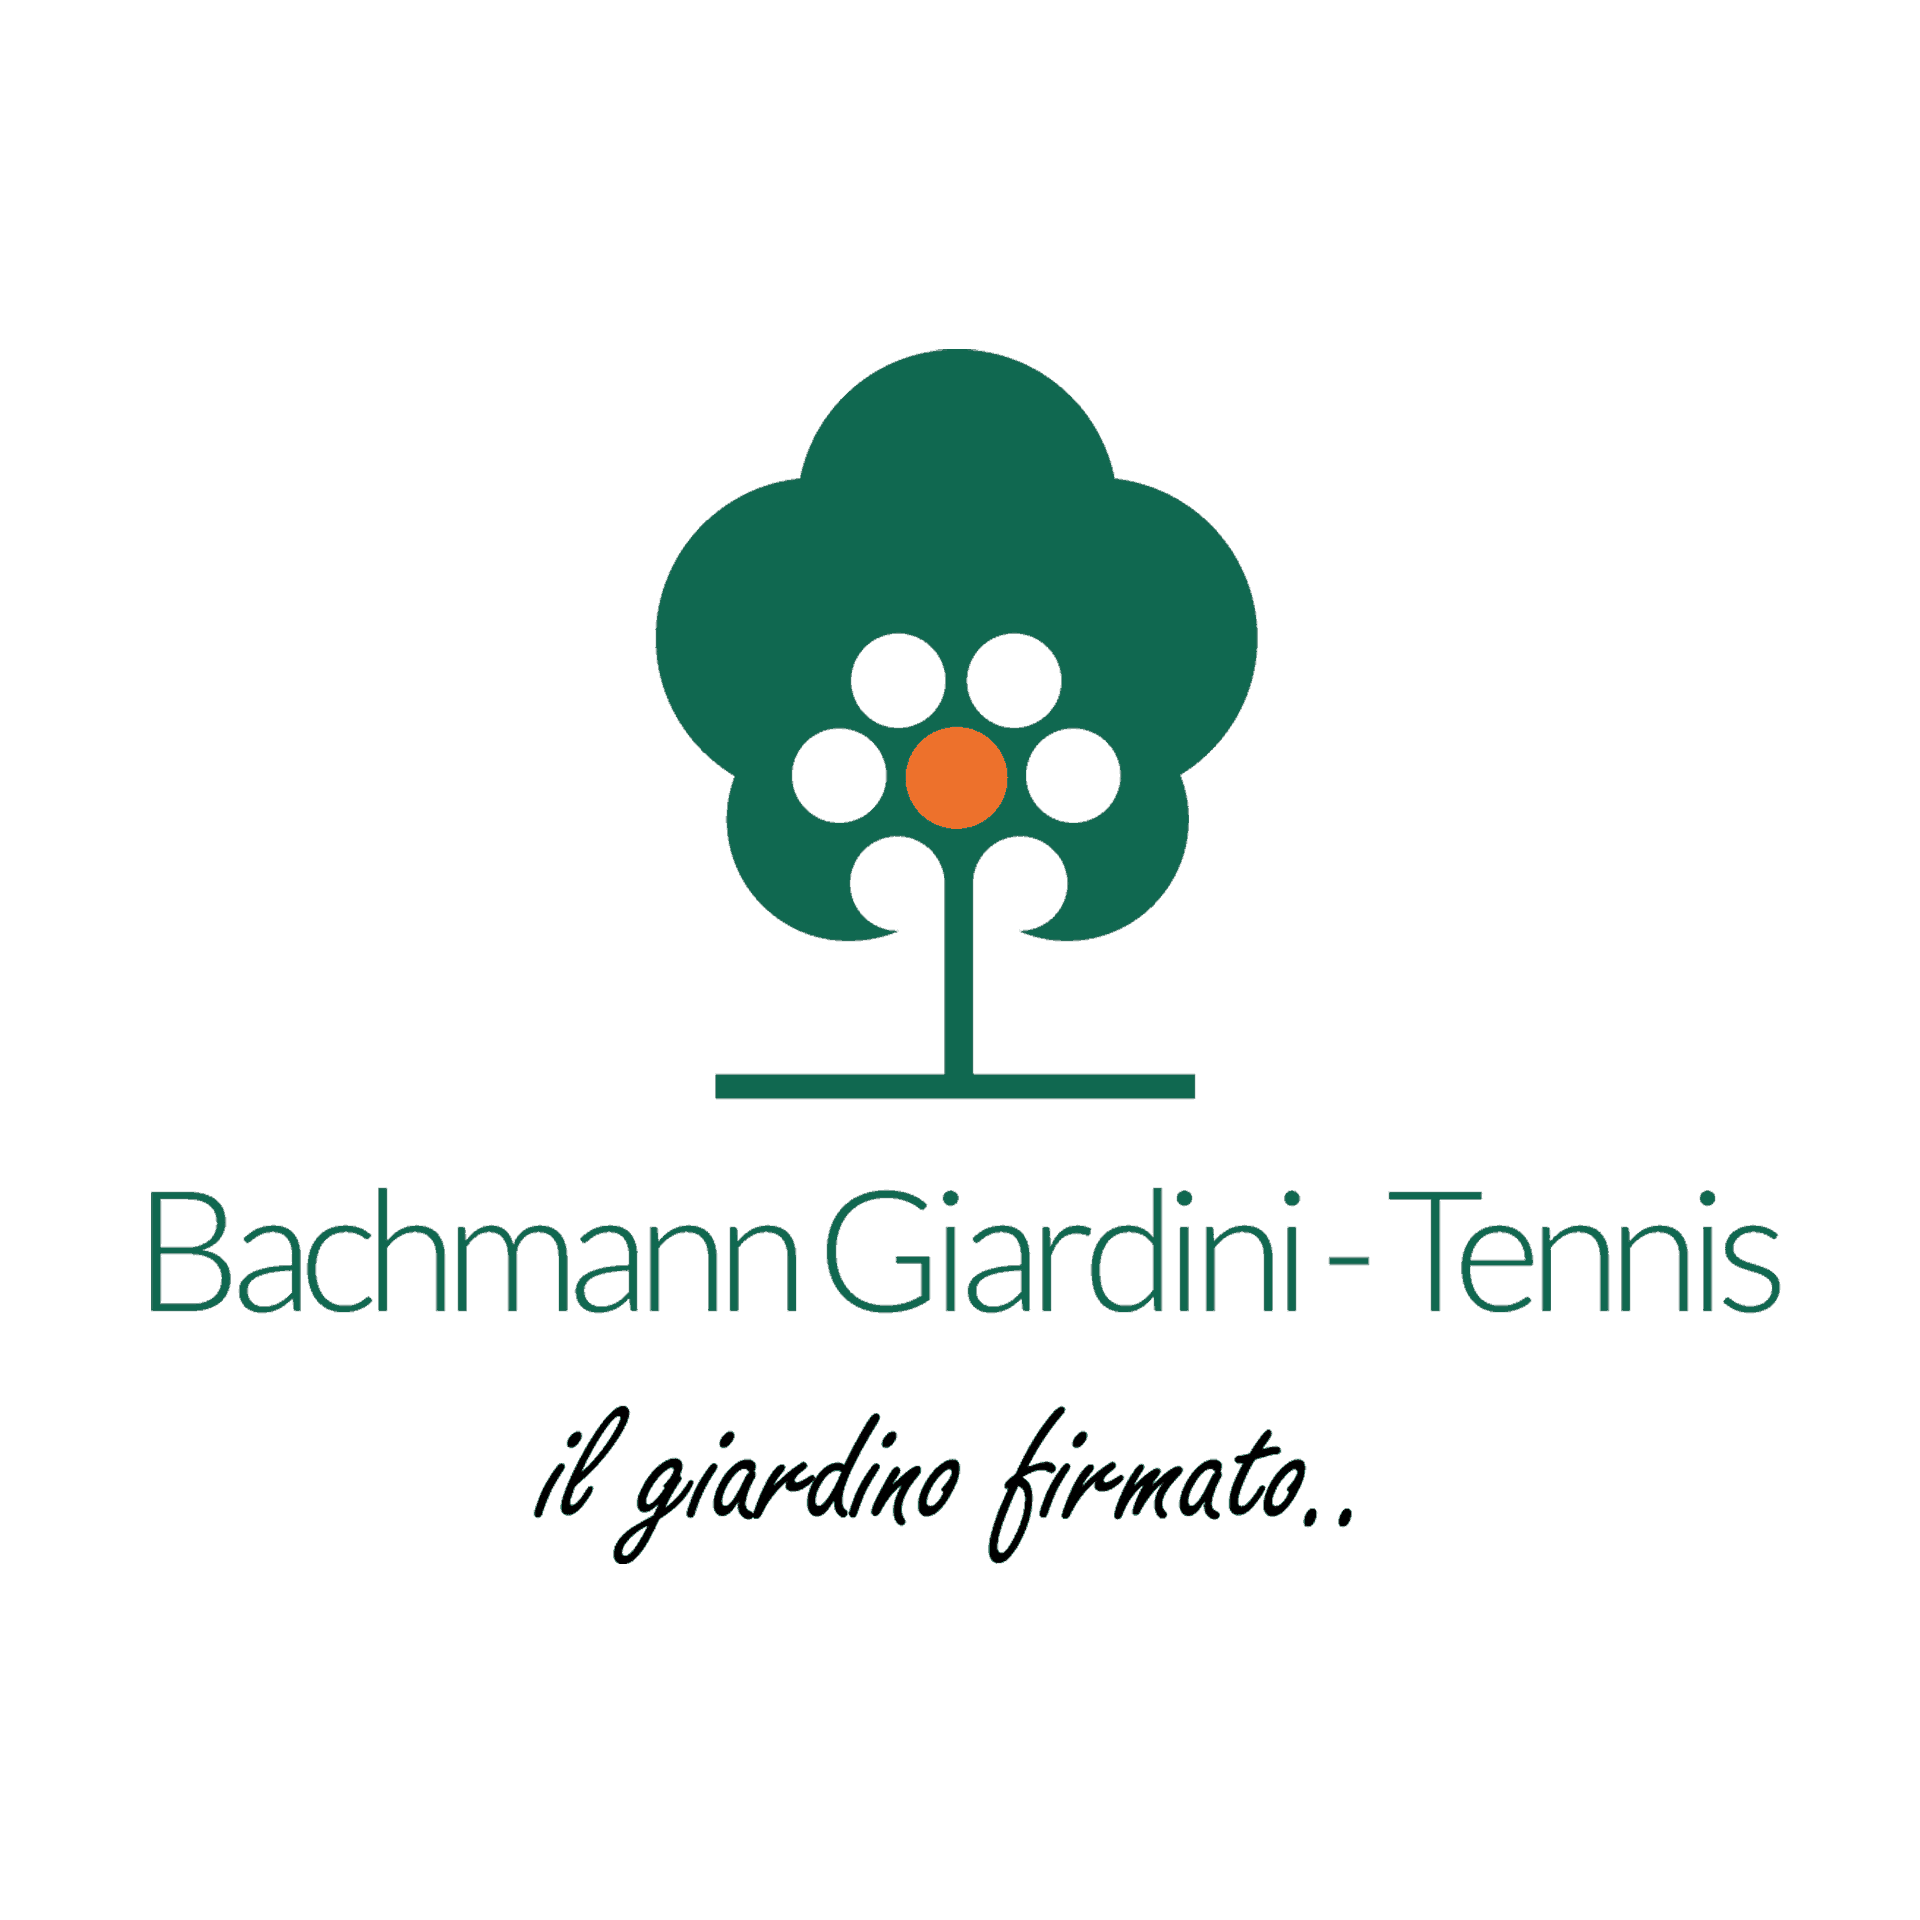 Bachmann Giardini